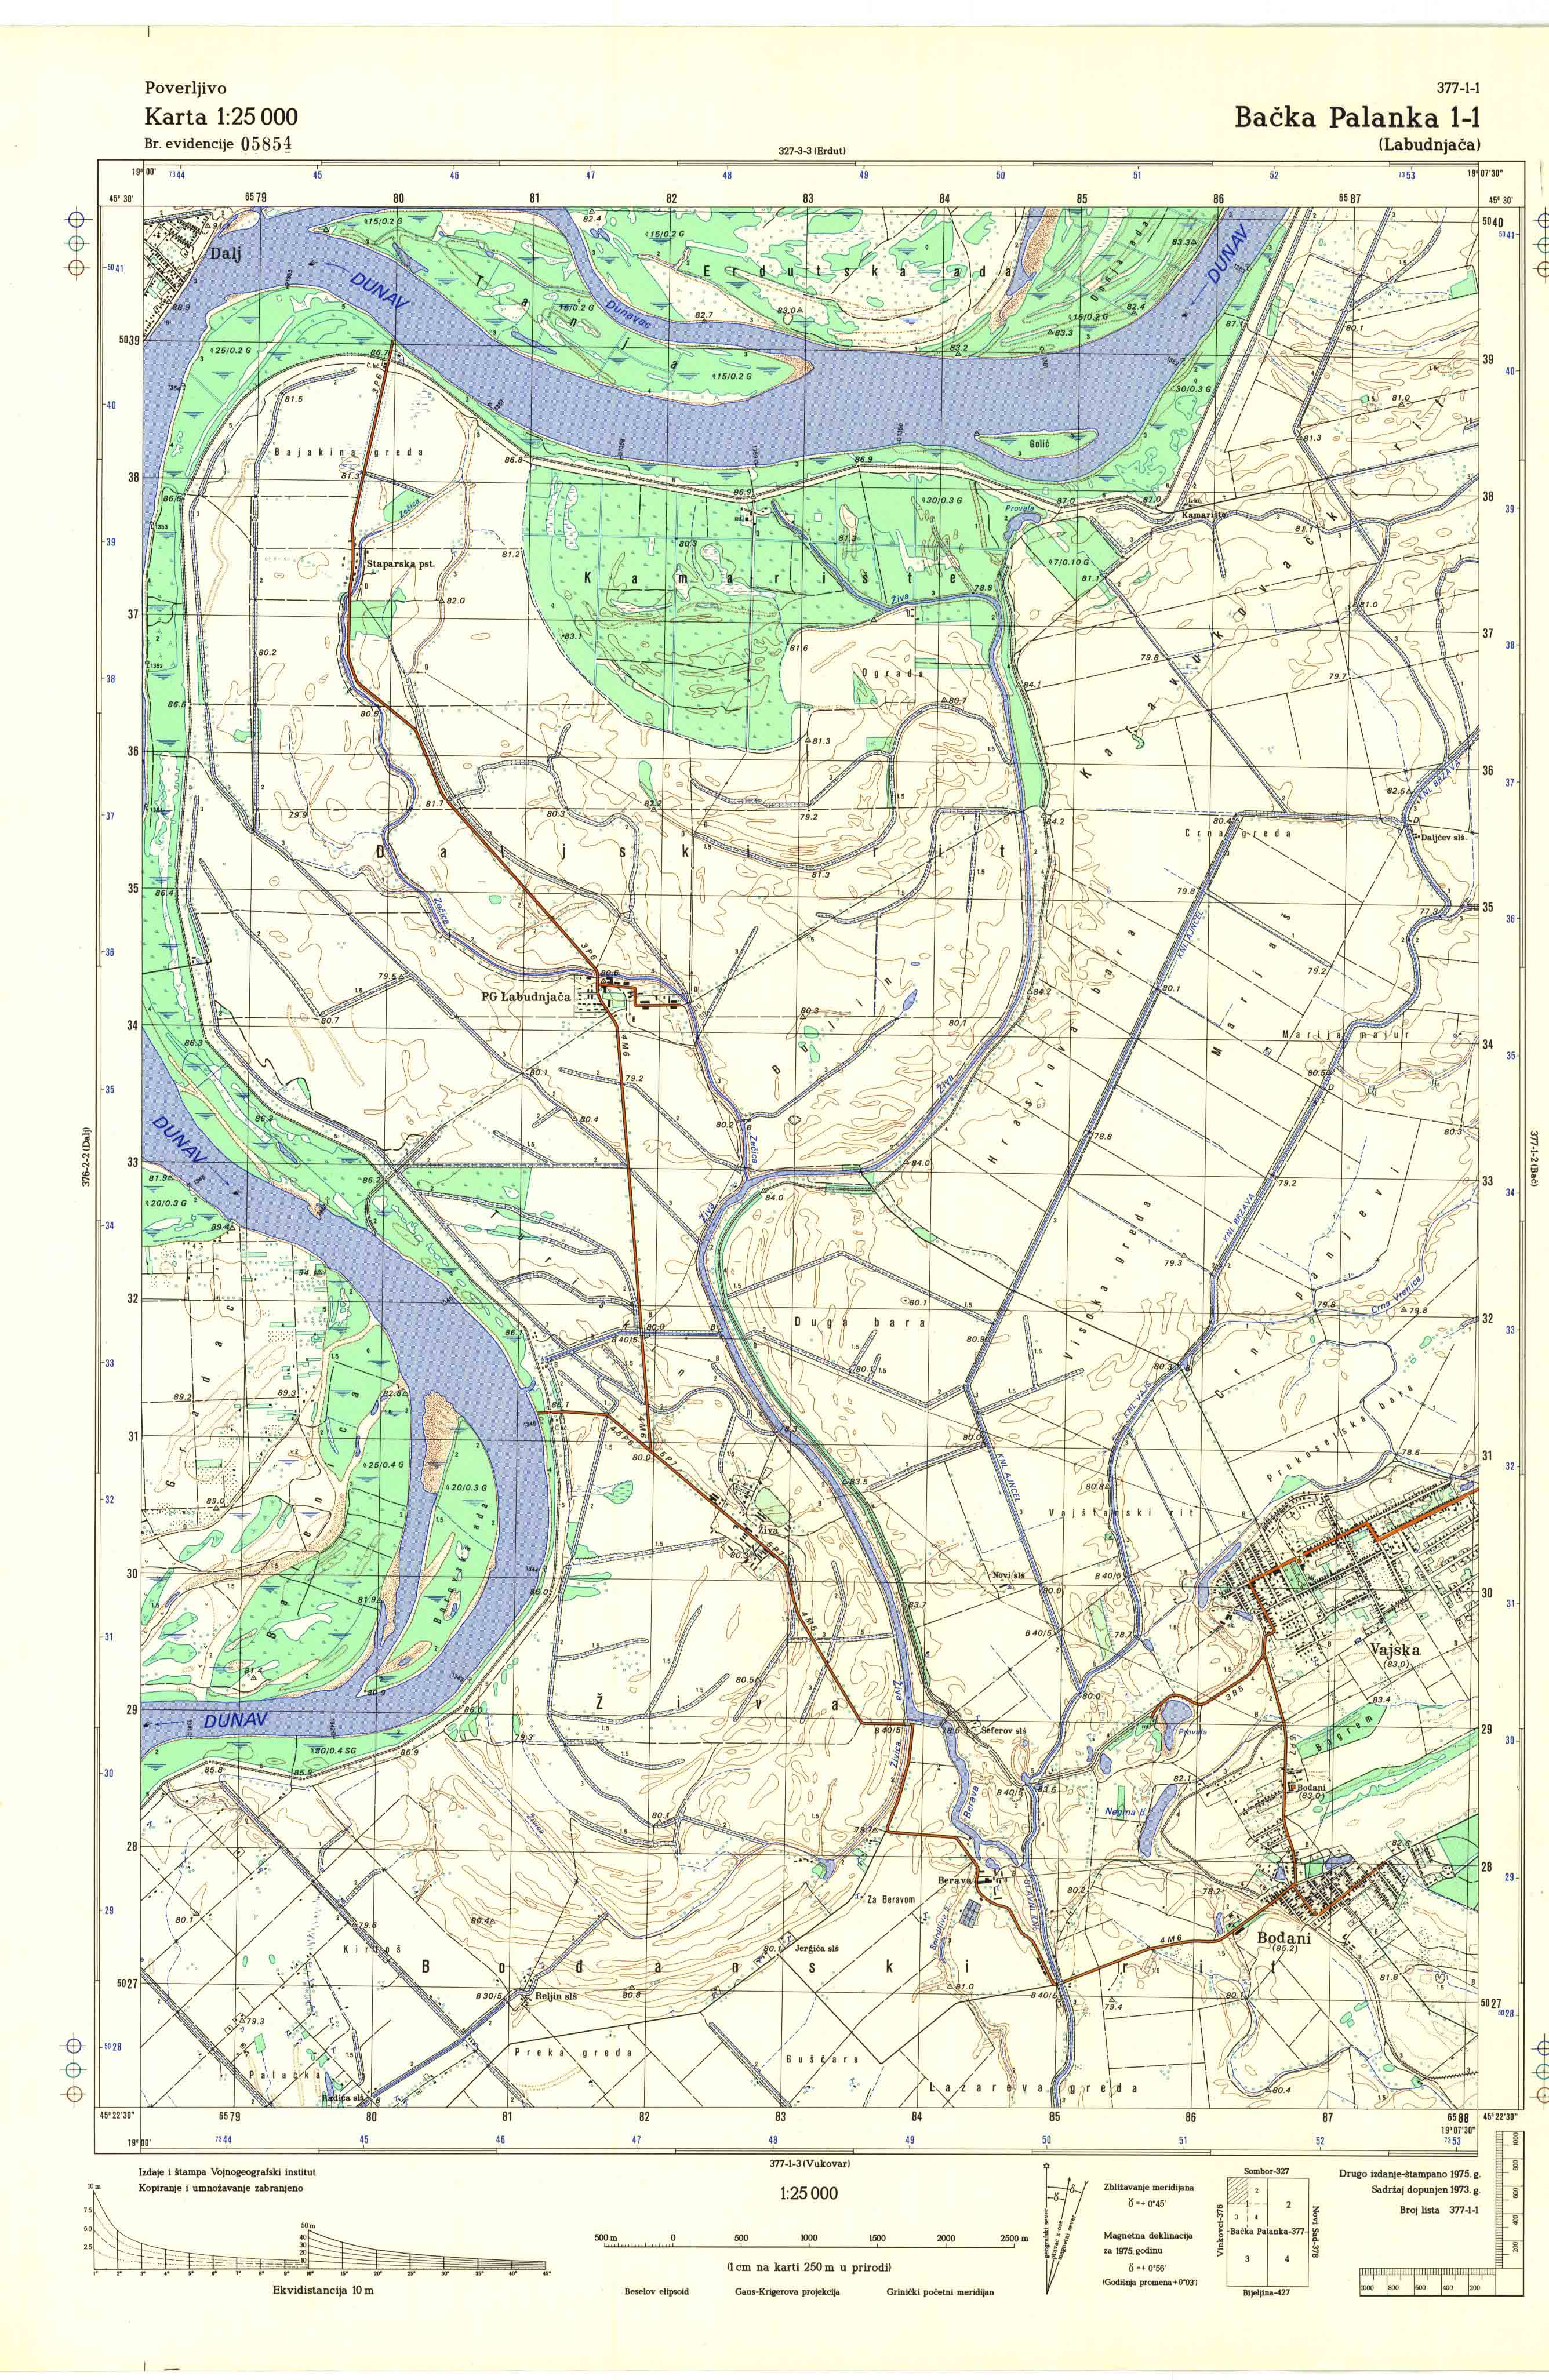  topografska karta srbije 25000 JNA  Bačka Palanka